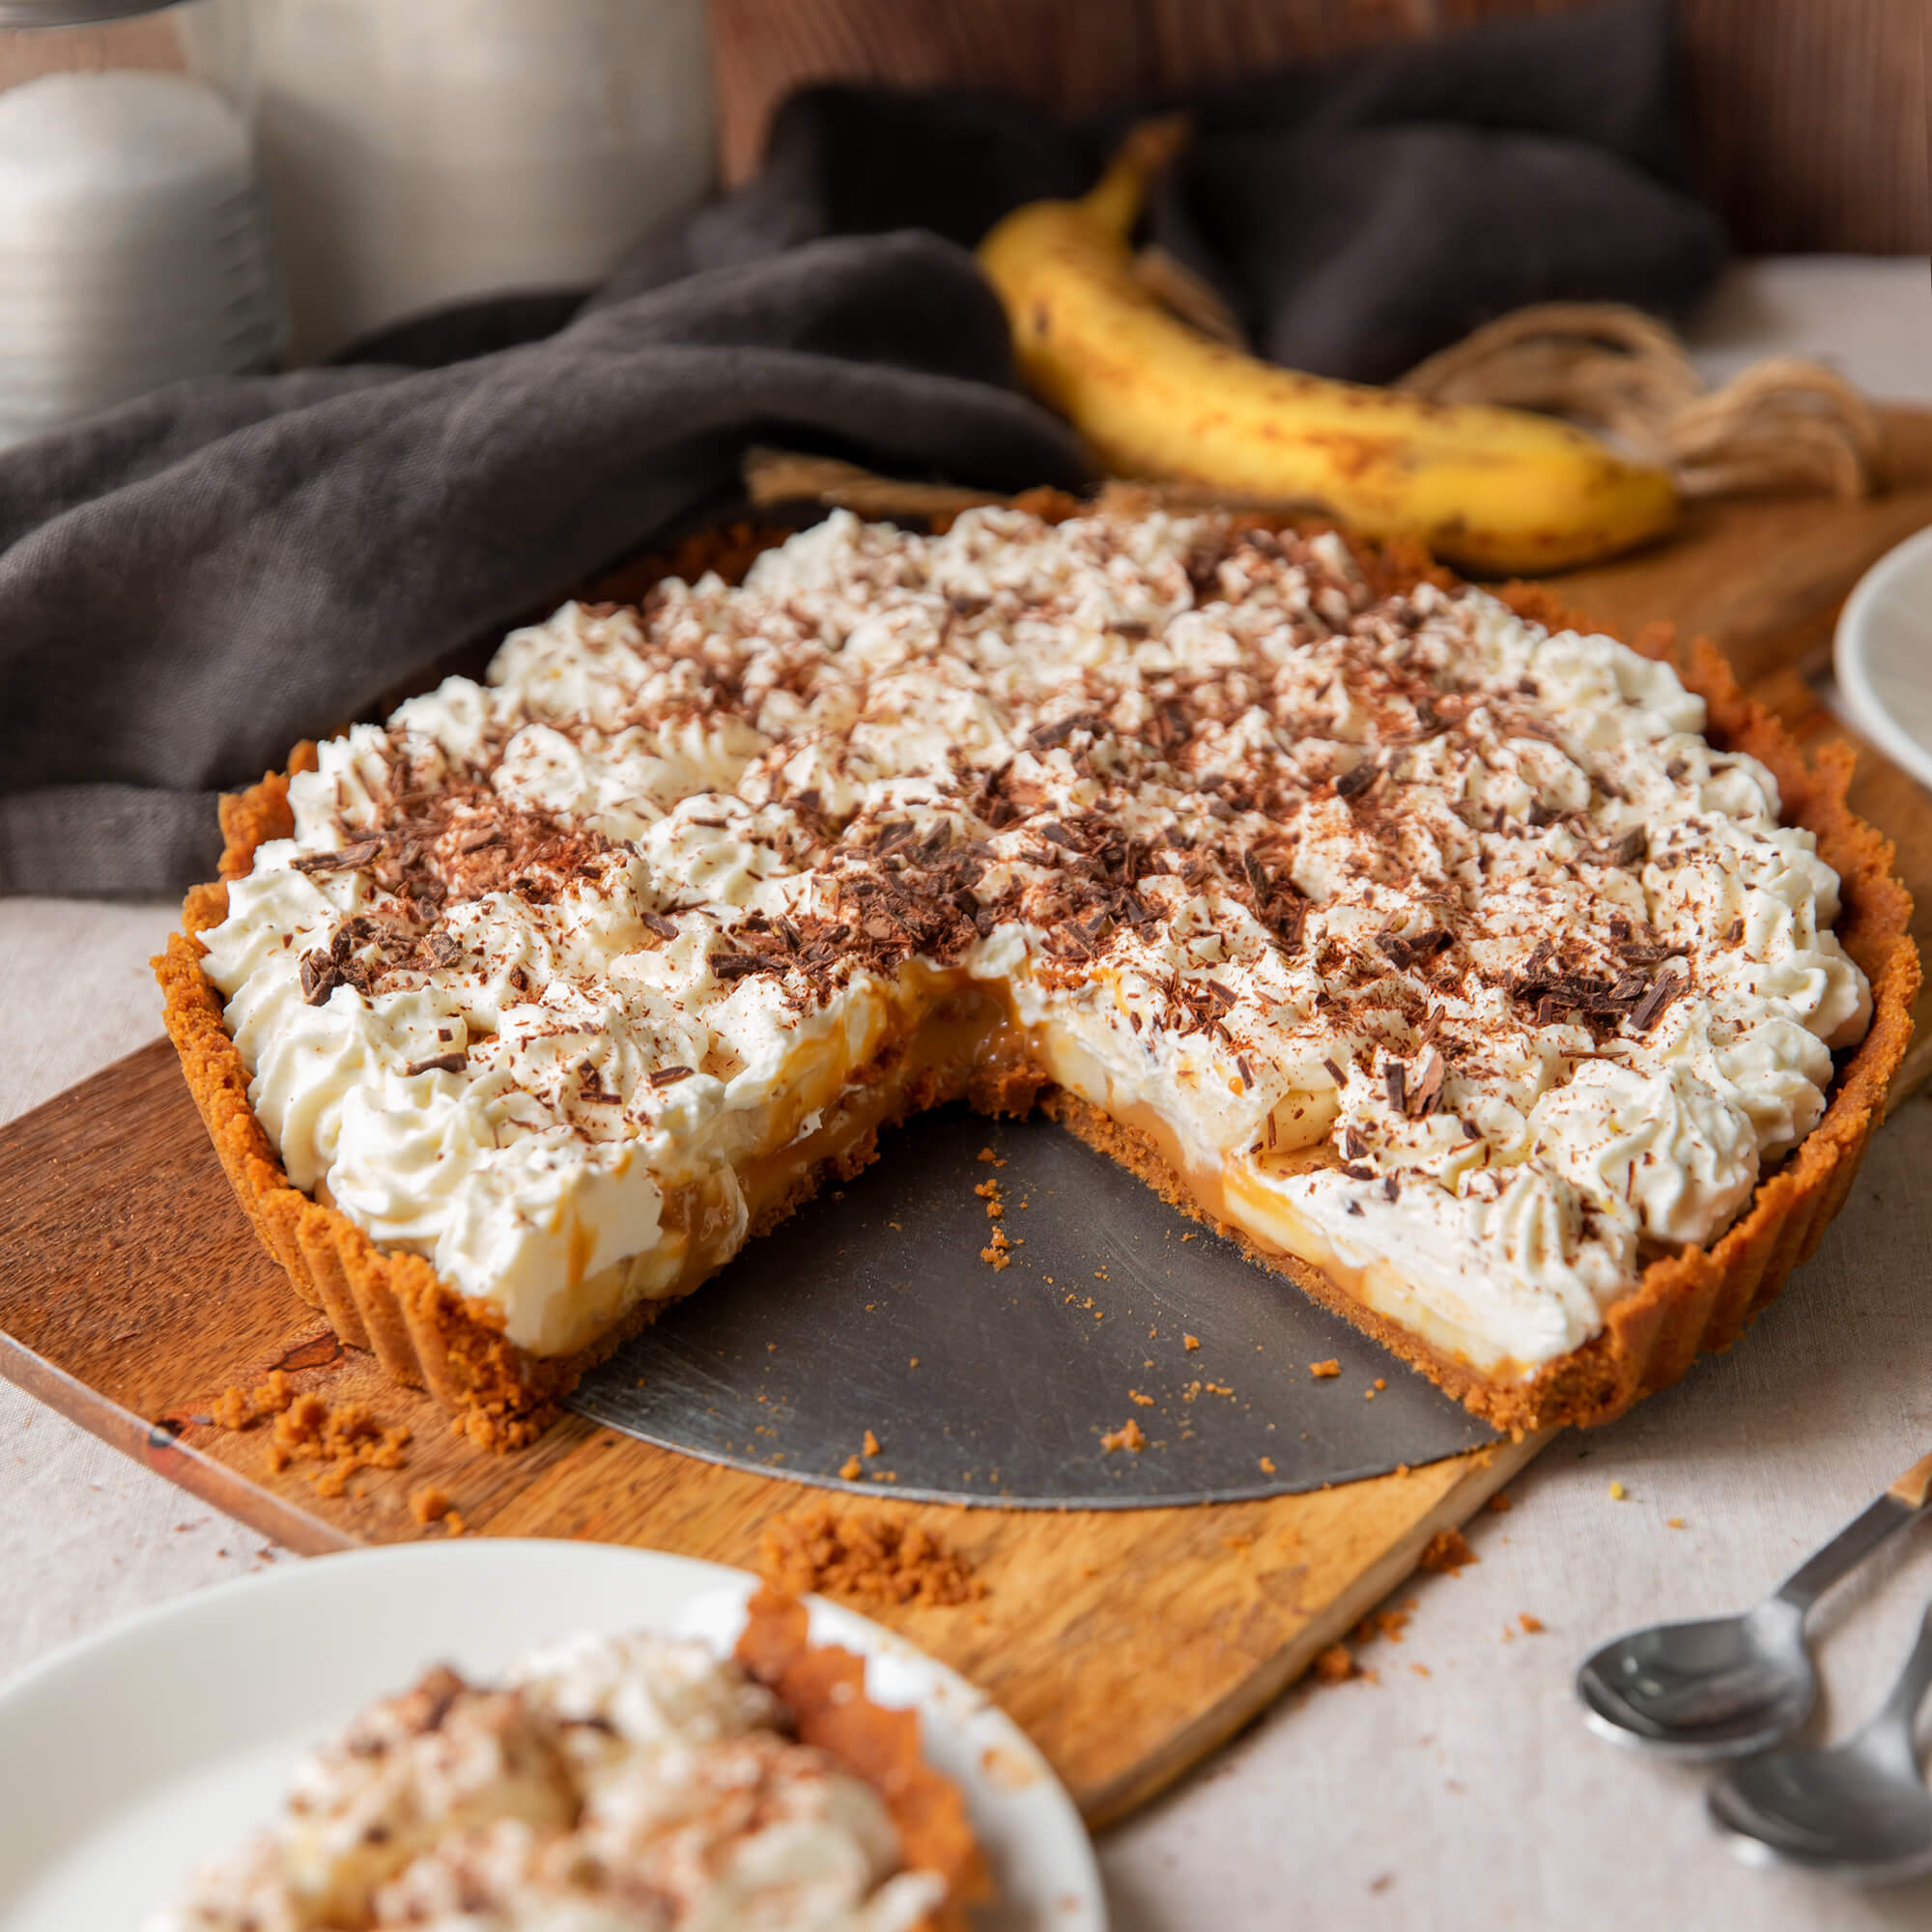 Tarta de queso con chocolate blanco en Cecofry - Recetas Cecotec Mambo ·  Cecofry